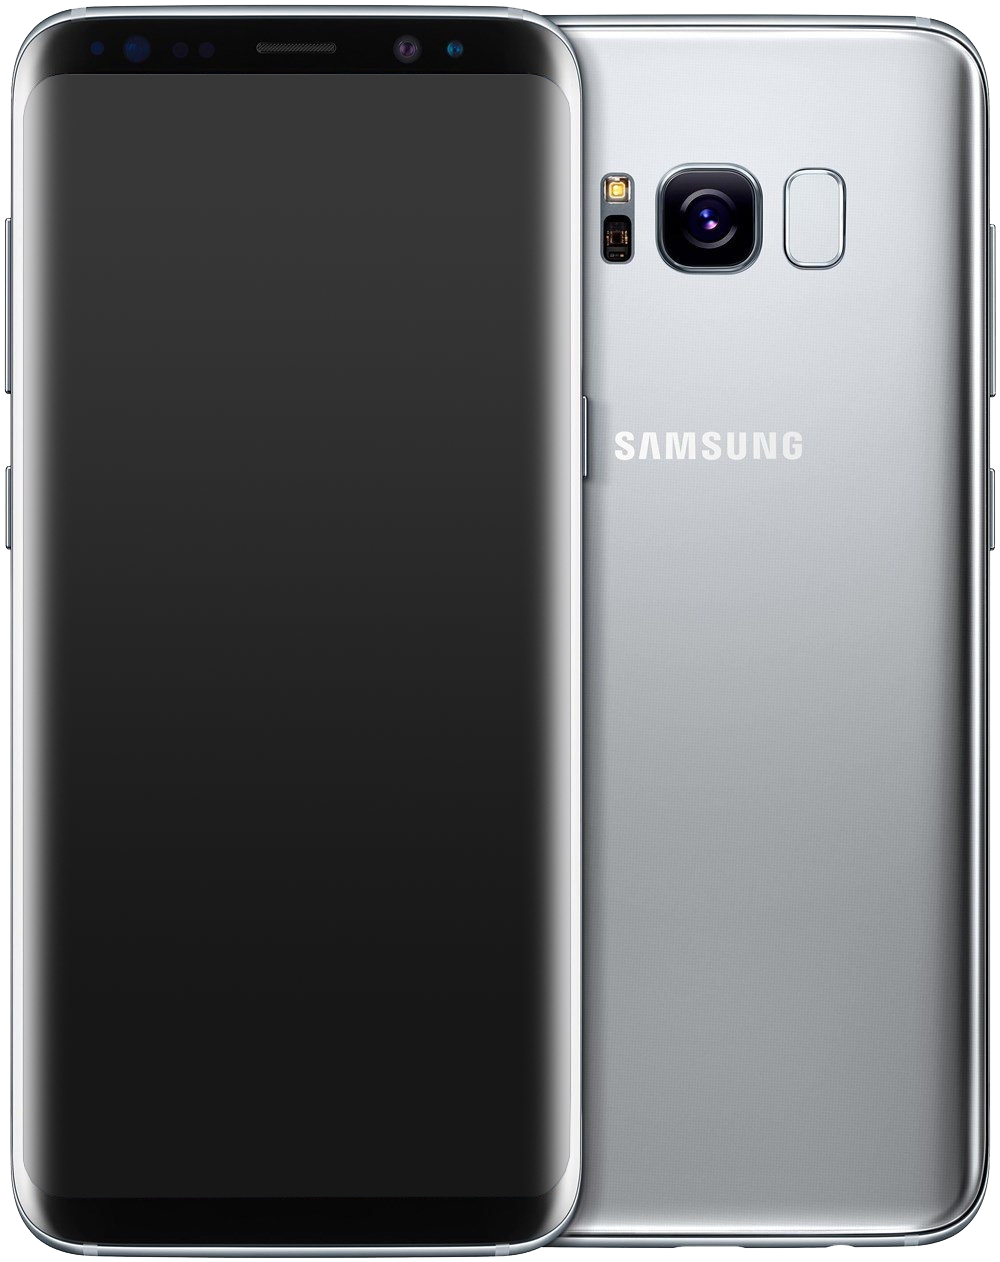 Samsung Galaxy S8 Dual-SIM silber - Ohne Vertrag